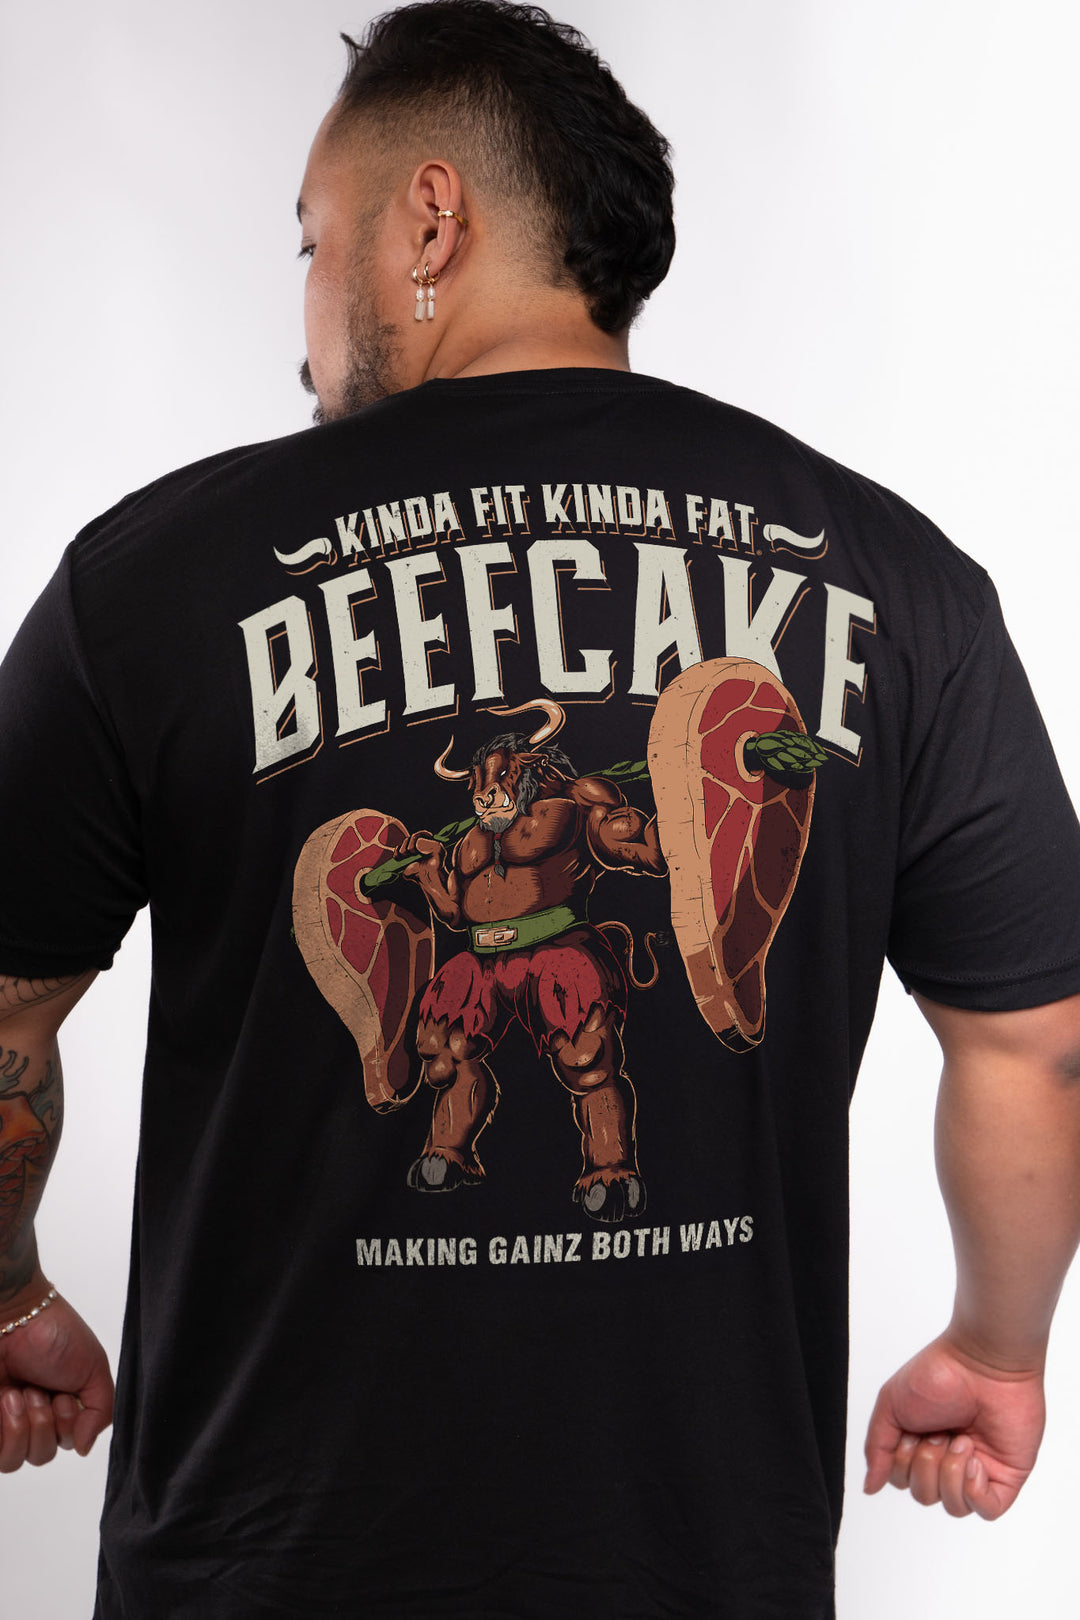 Beefcake Signature Blend T-Shirt